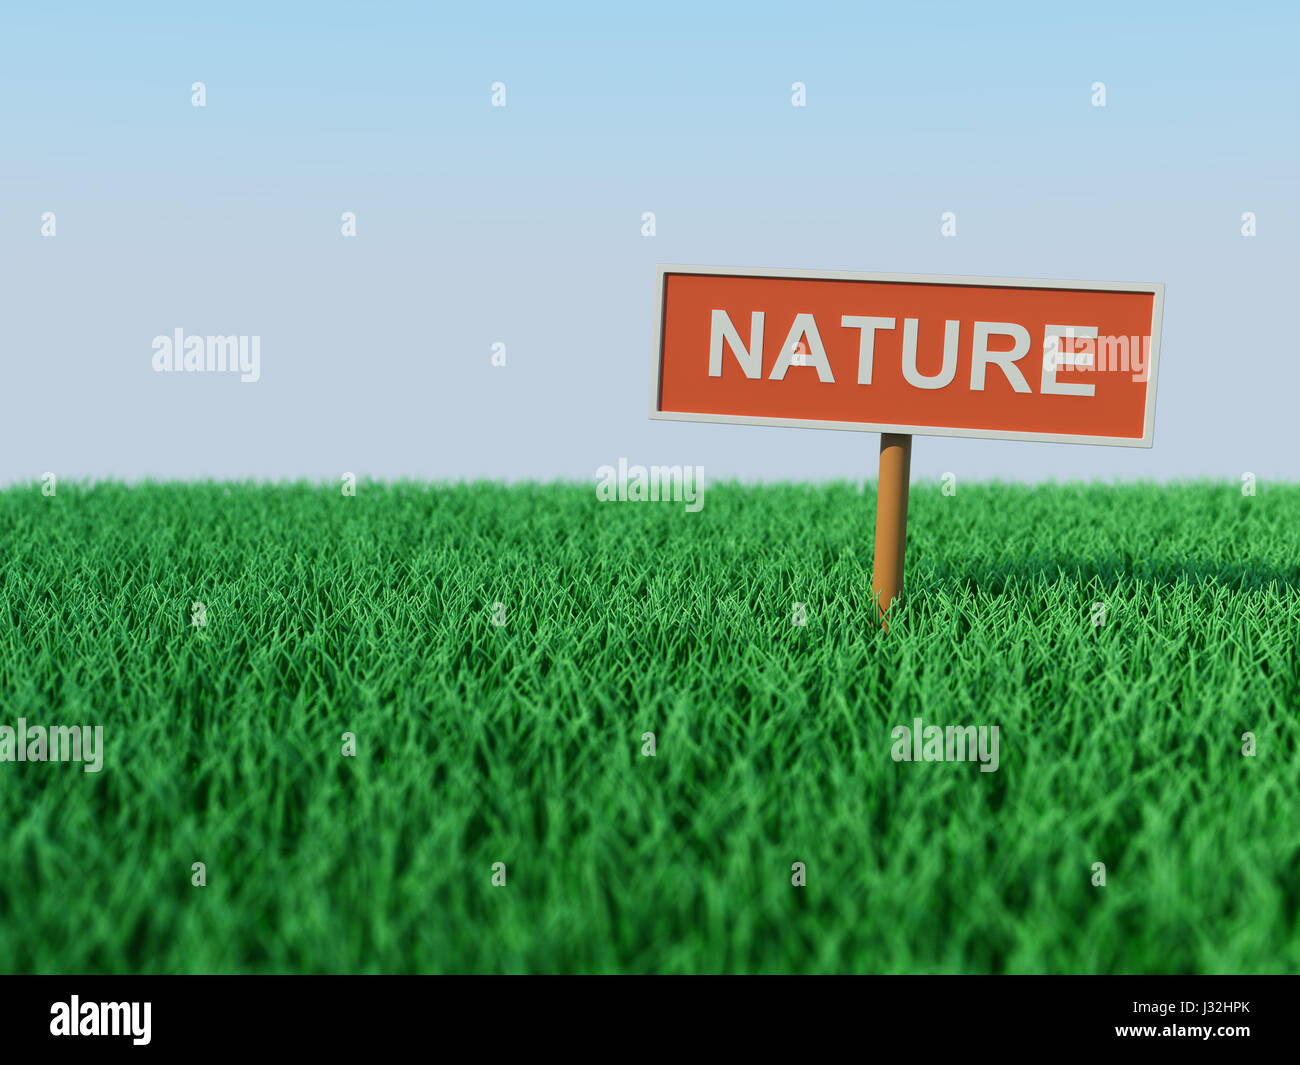 Concept Nature - Image 3D reconstruite Banque D'Images